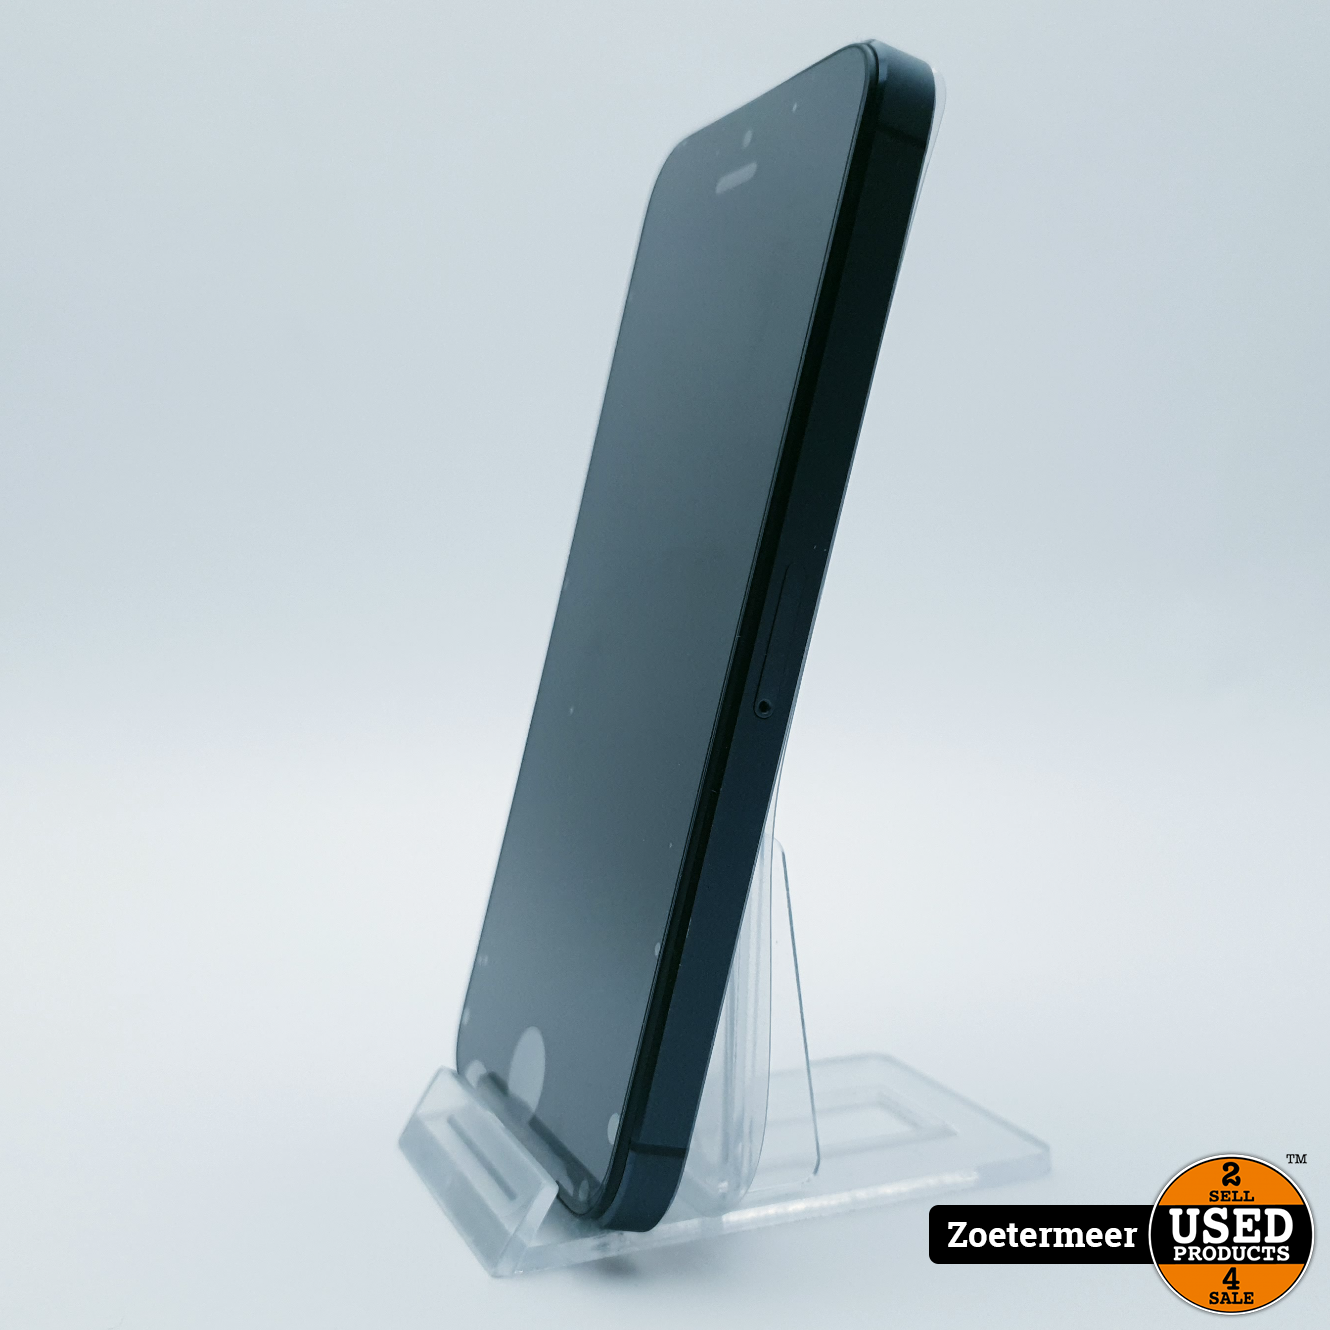 iPhone 5 32GB Zwart || Nieuw uit seal Used Products